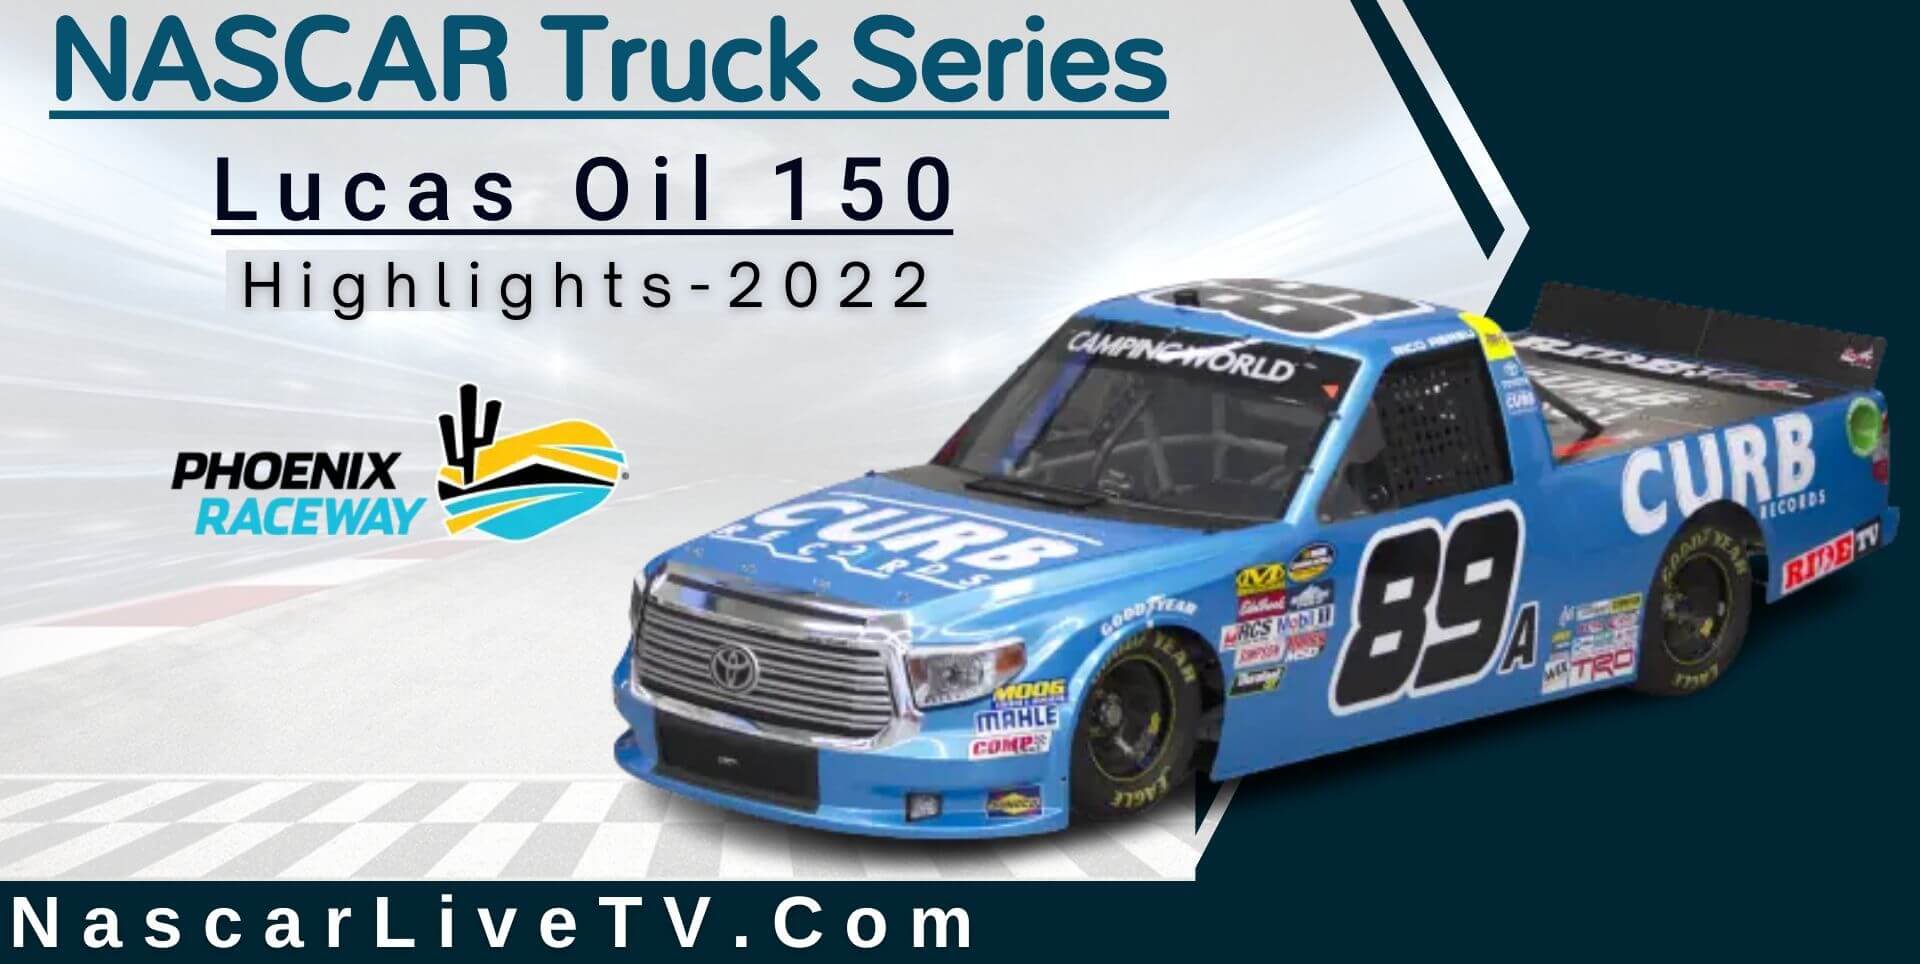 Lucas Oil 150 Highlights NASCAR Truck Series 2022